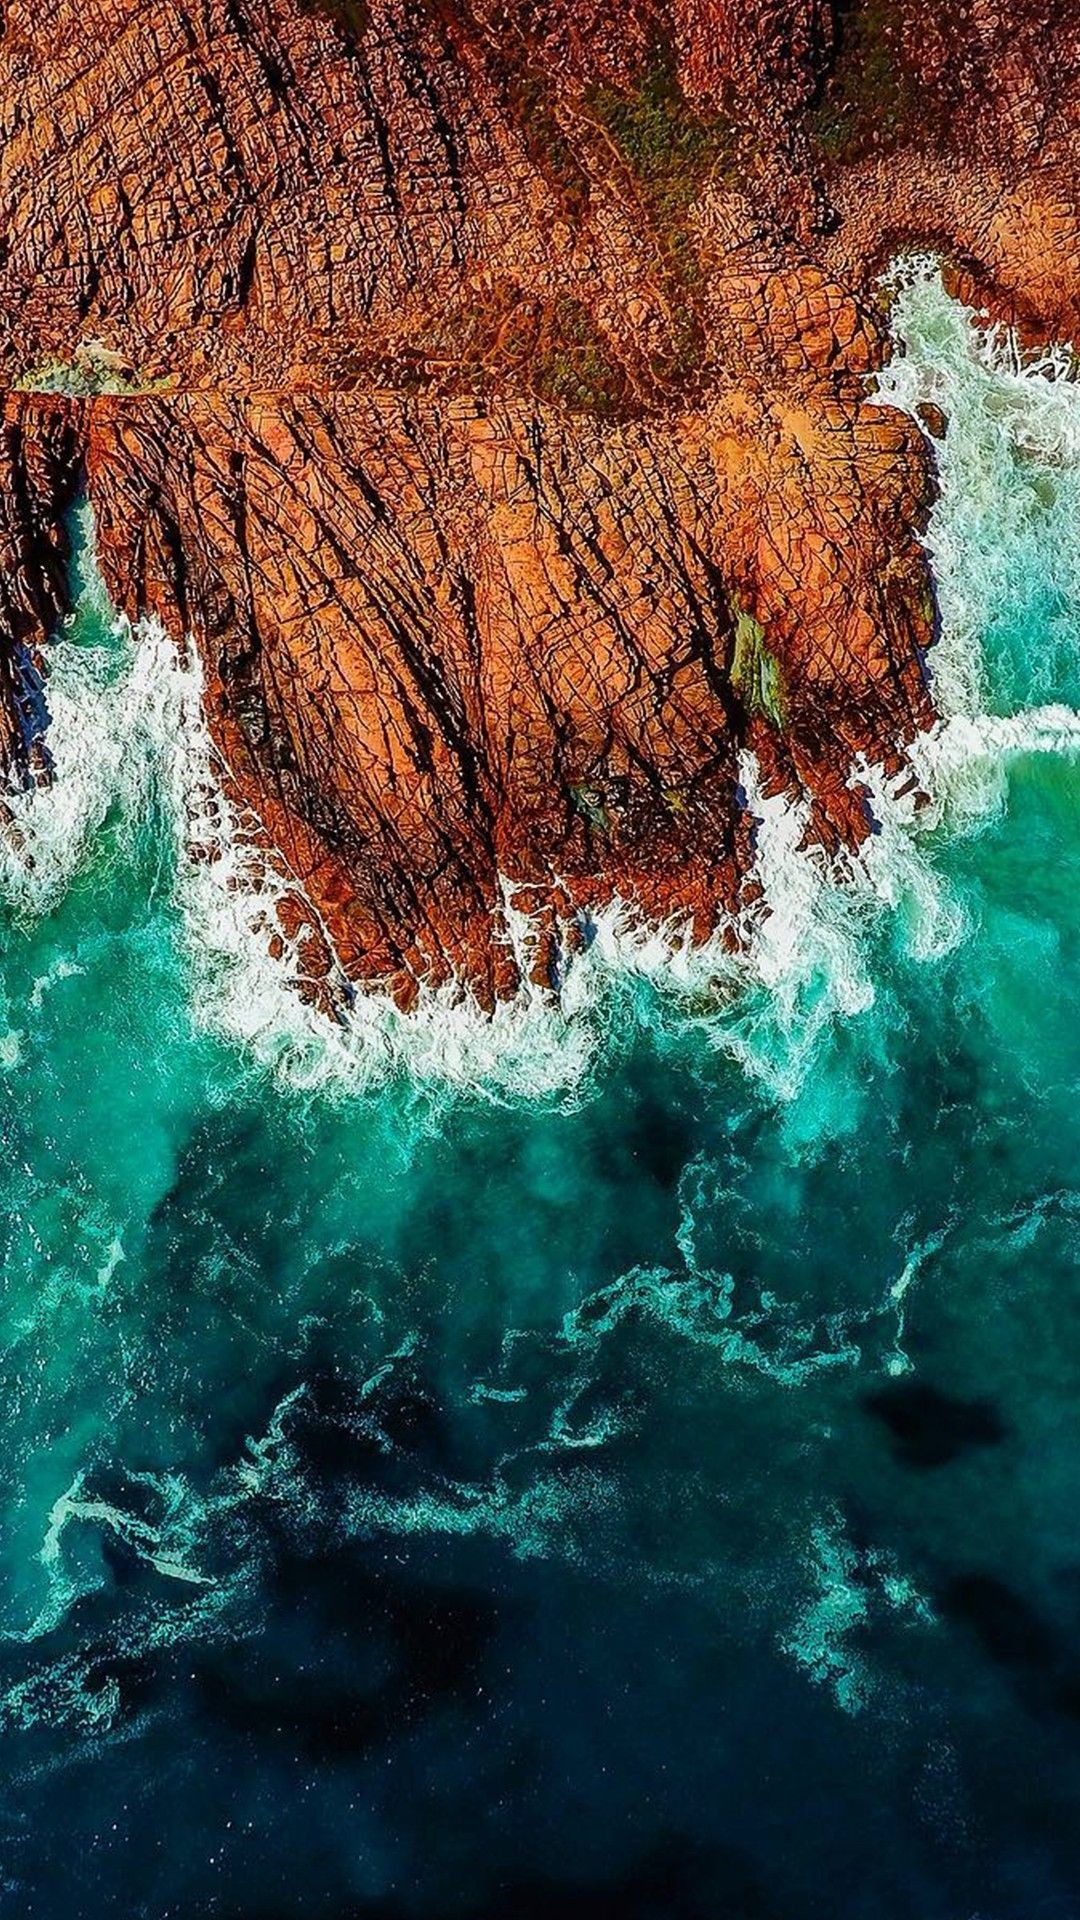 1080x1920 iPhone wallpaper. Ocean waves.